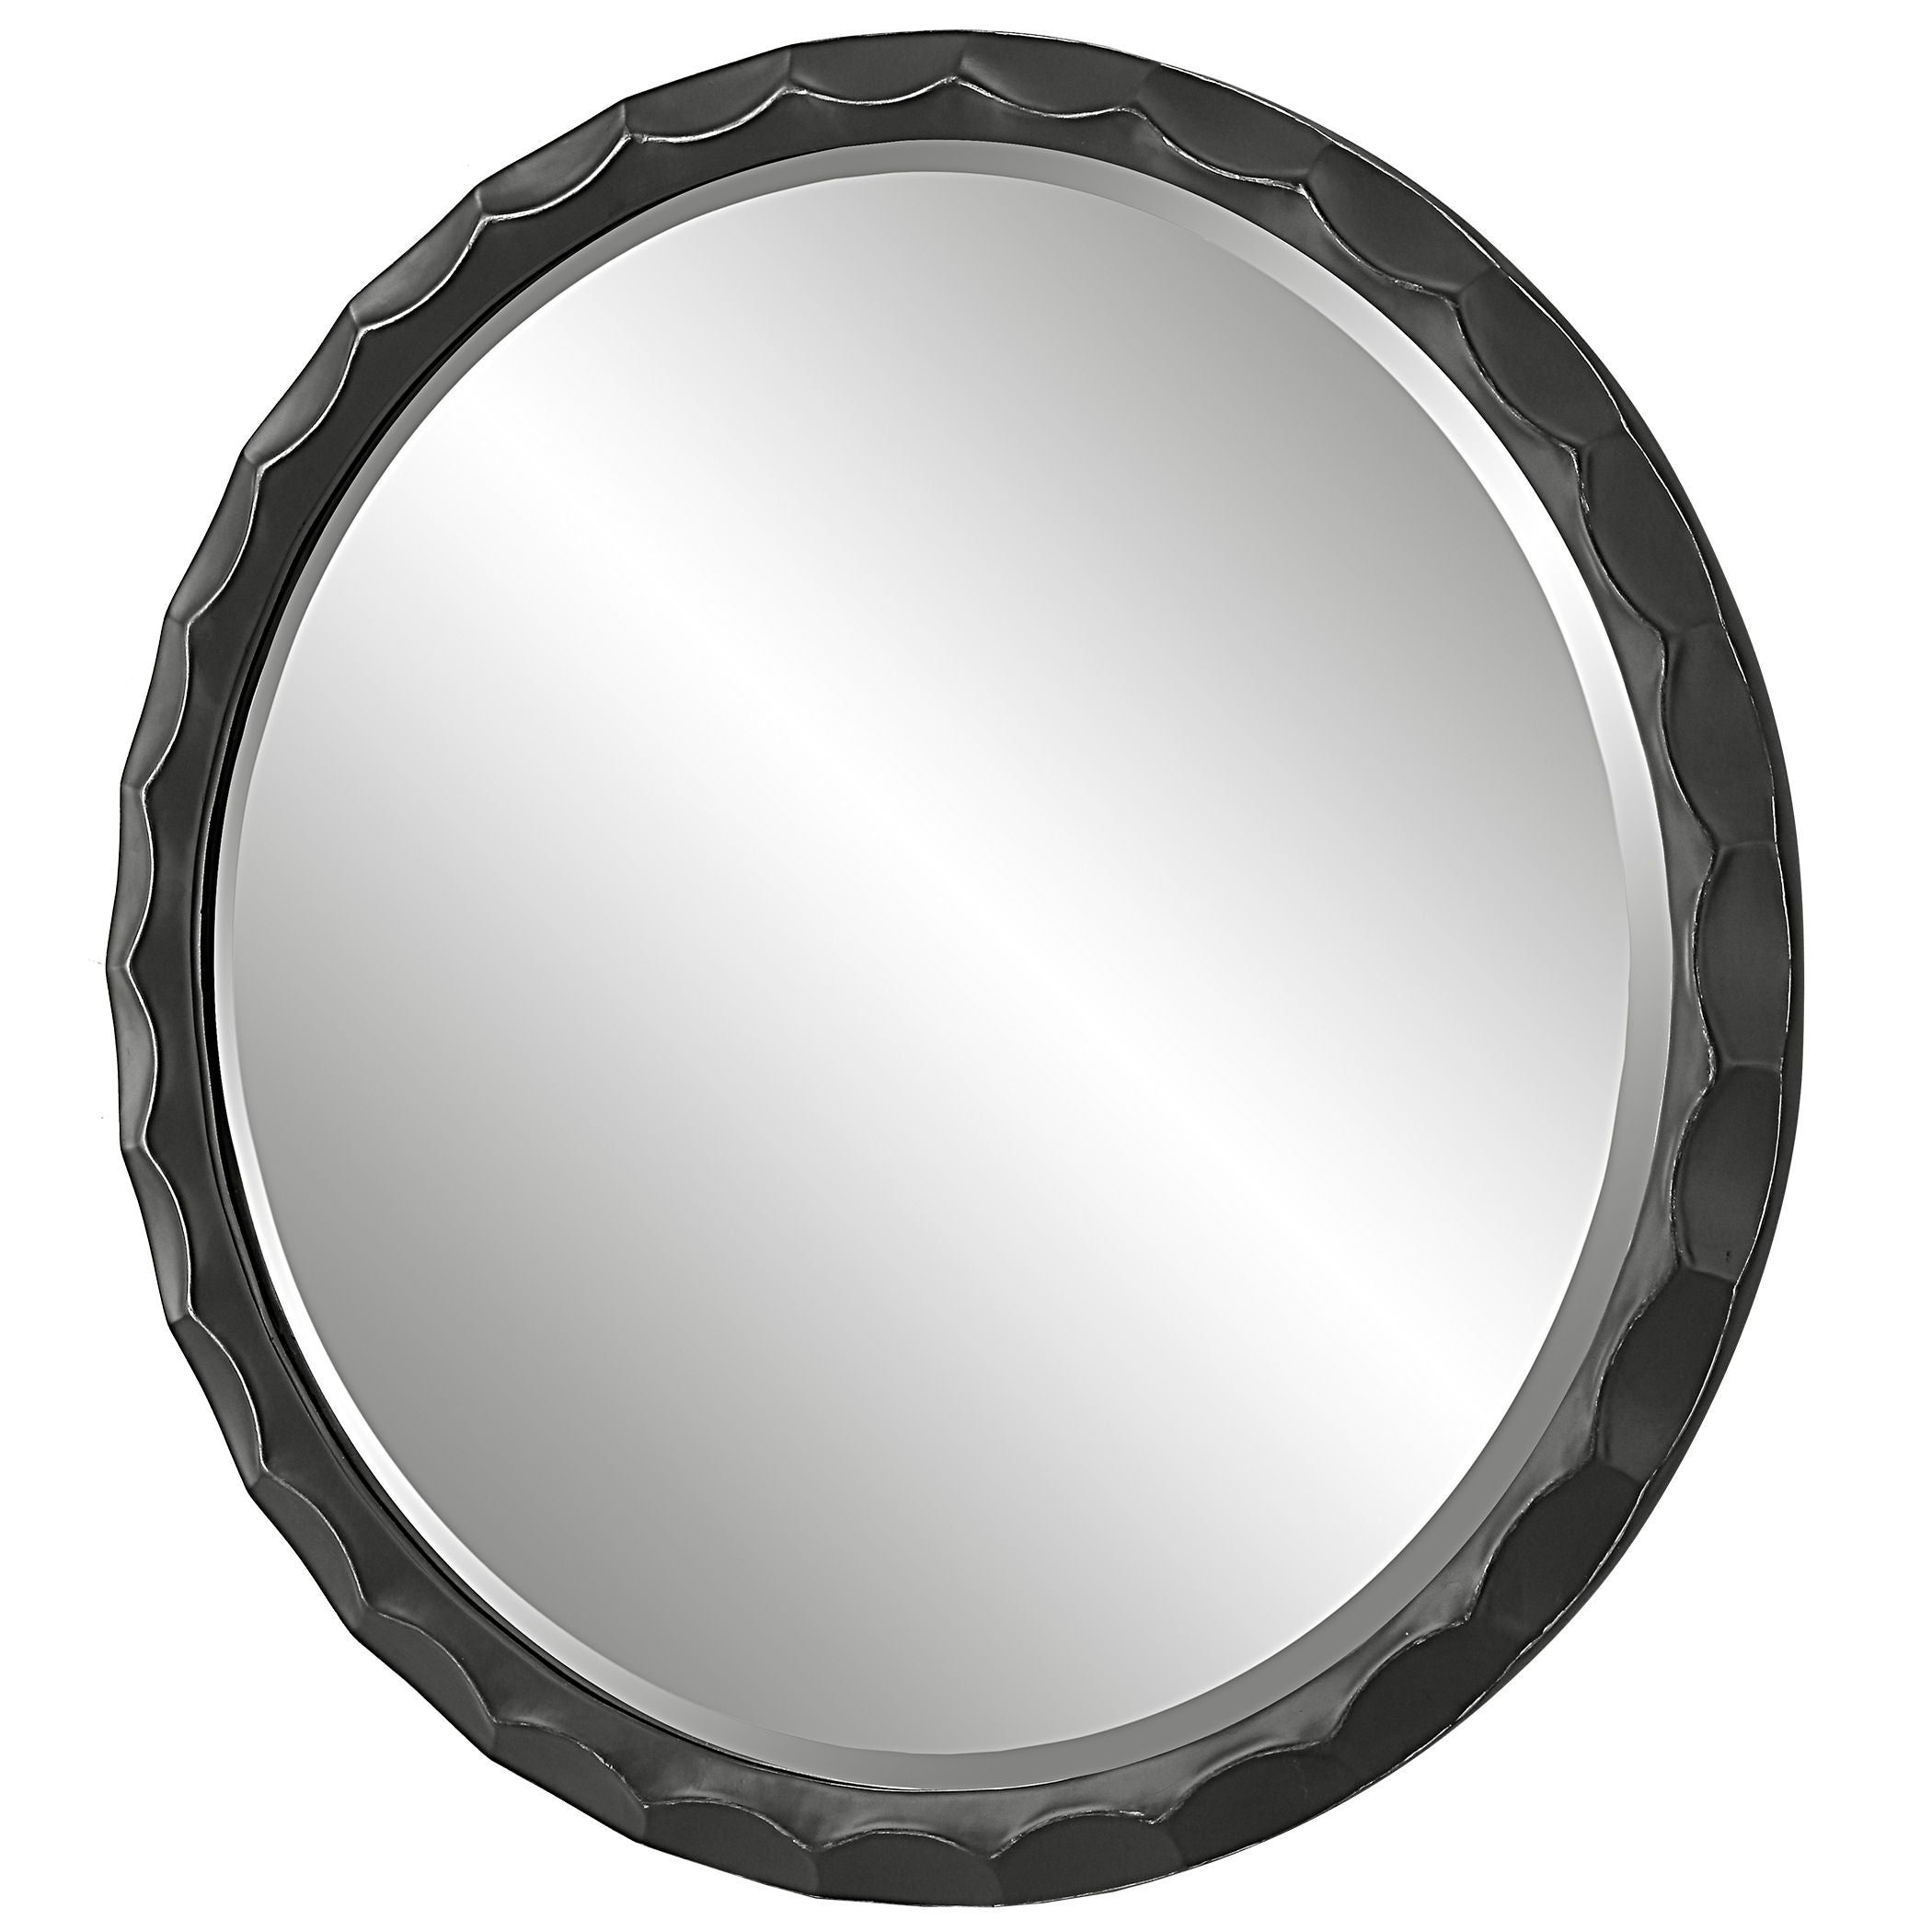 Scalloped - Edge Round Mirror - Black